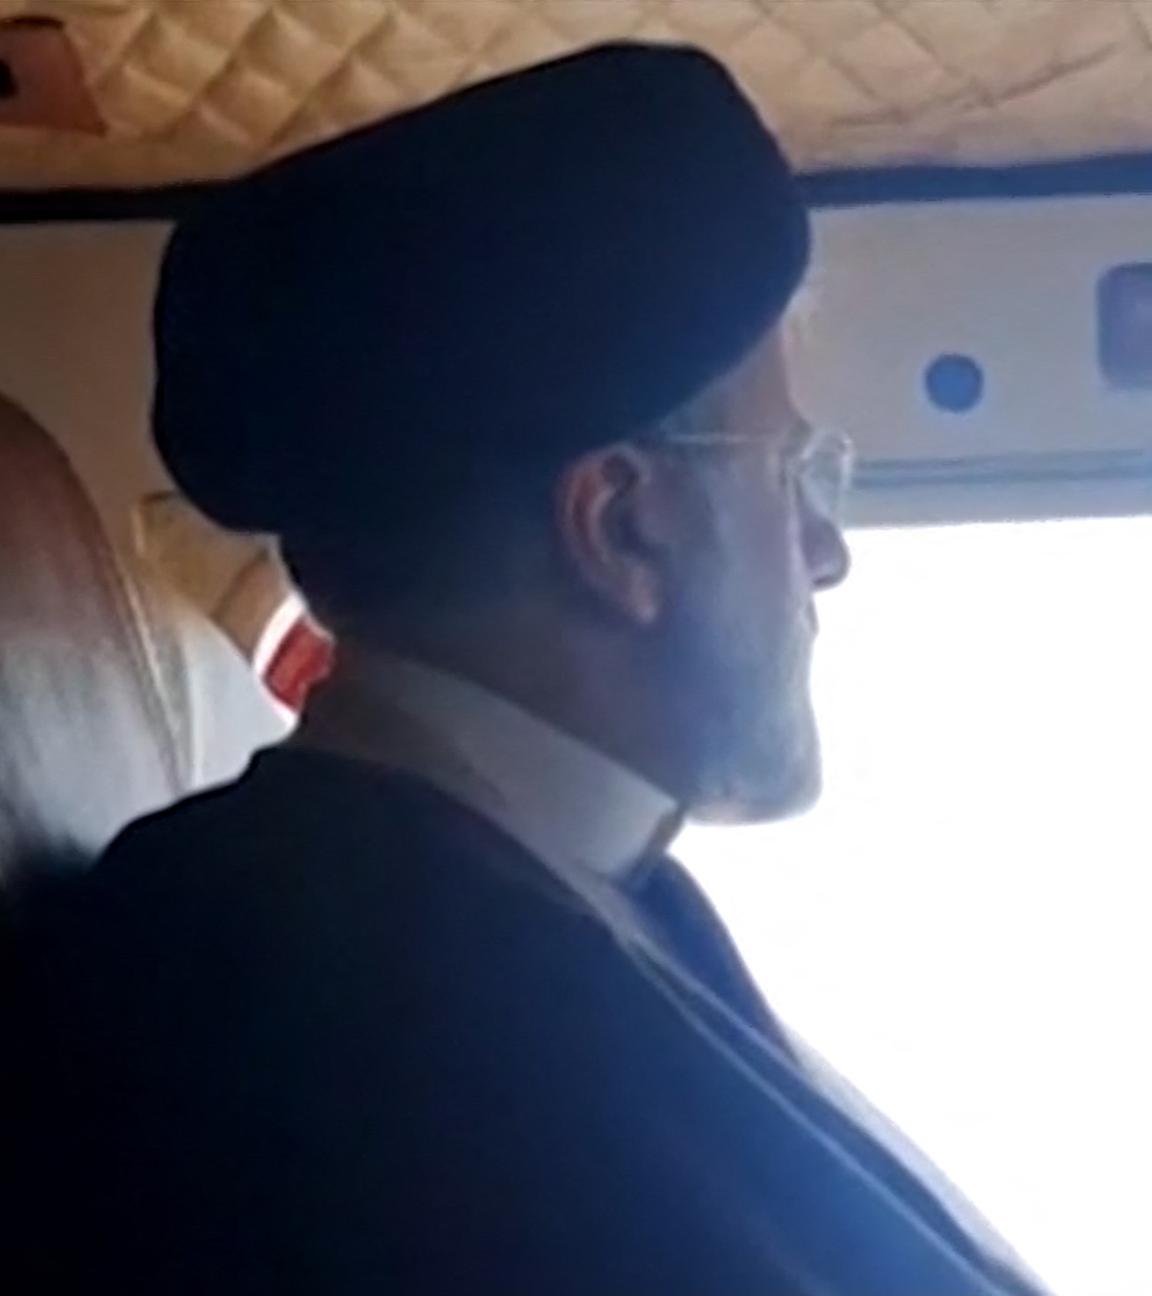 Diese Aufnahme aus einem vom iranischen Staatsfernsehen IRINN veröffentlichten Video zeigt den iranischen Präsidenten Ebrahim Raisi an Bord des Helikopters, der später abstürzte.